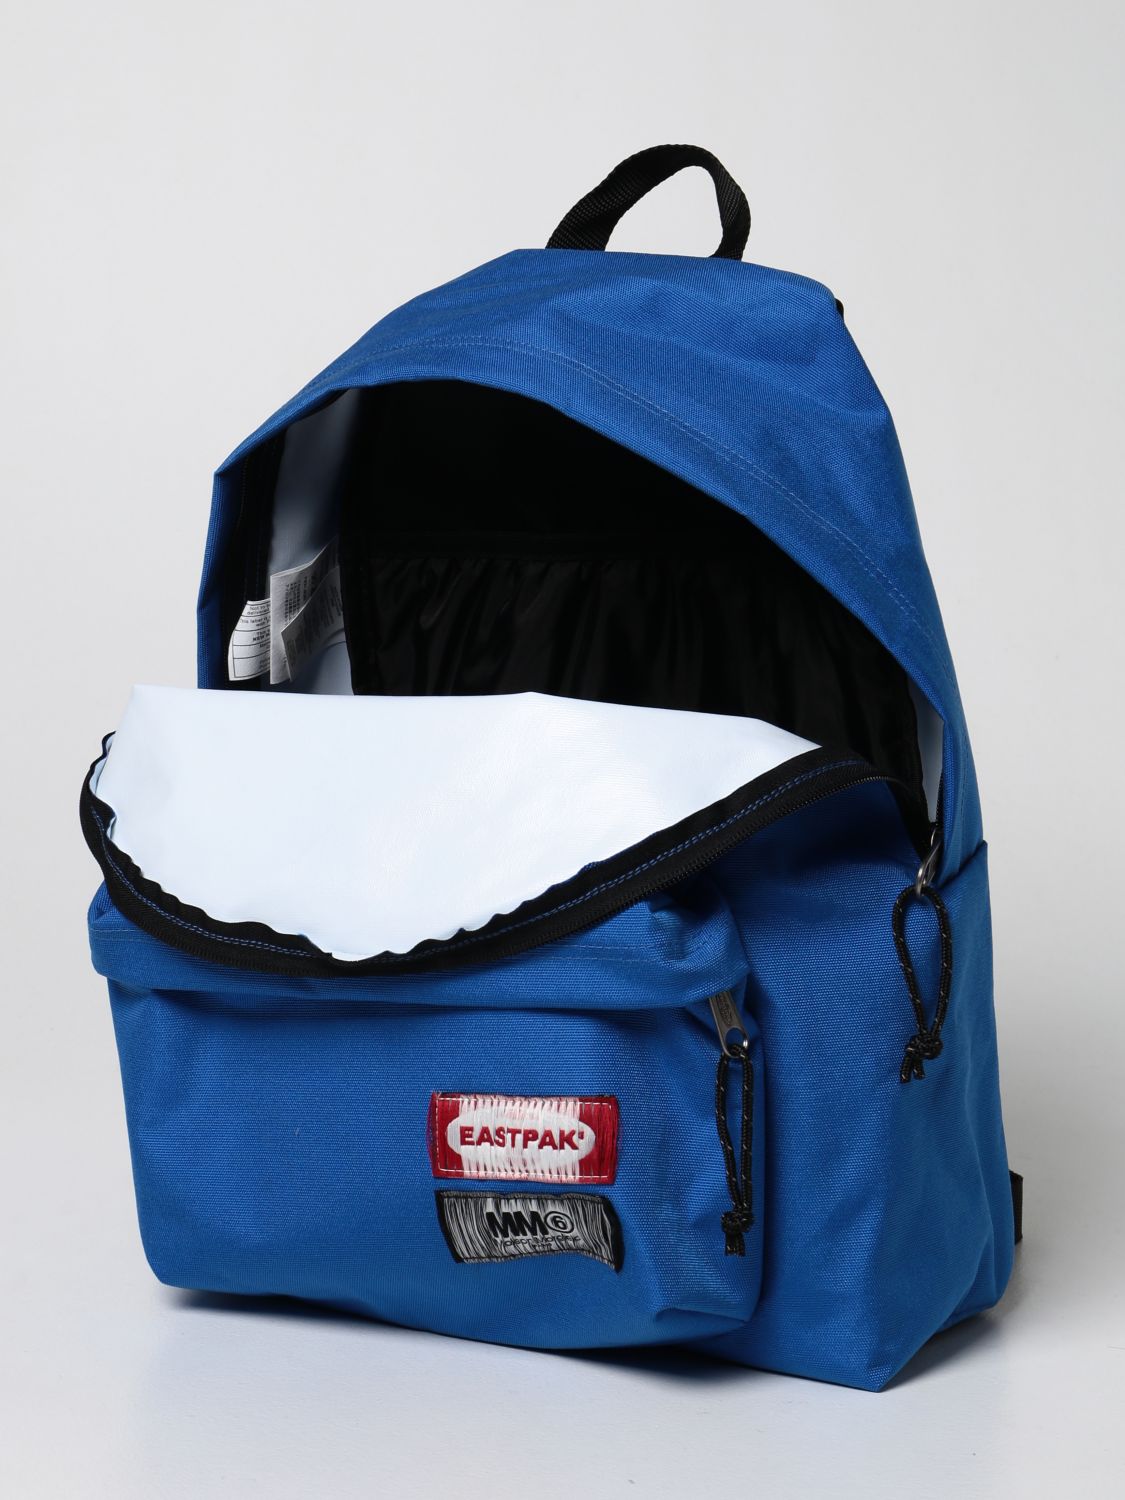 Backpack Eastpak: Mm6 Maison Margiela x Eastpak nylon backpack blue 4